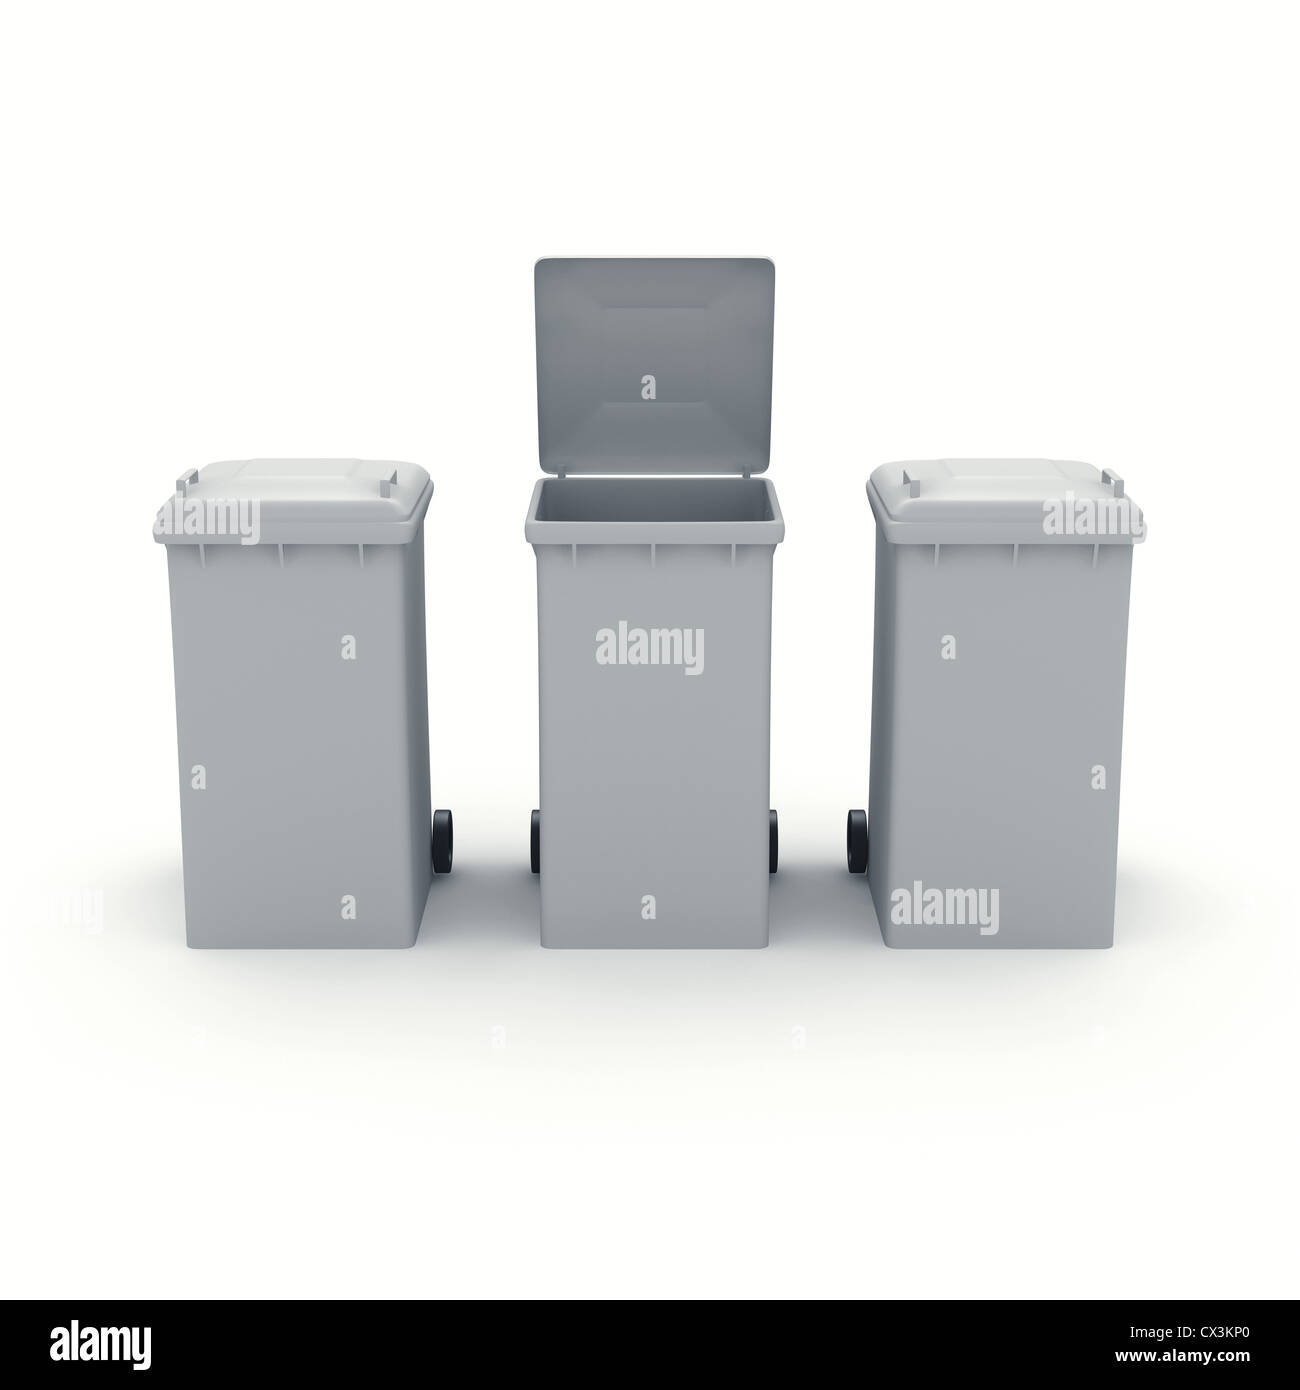 3 Graue Mülltonnen, Eine Mit Geöffnetem Deckel Auf Weissem Hintergrund, 3 Mülltonnen oder Mülltonnen, eins mit Deckel öffnen Stockfoto